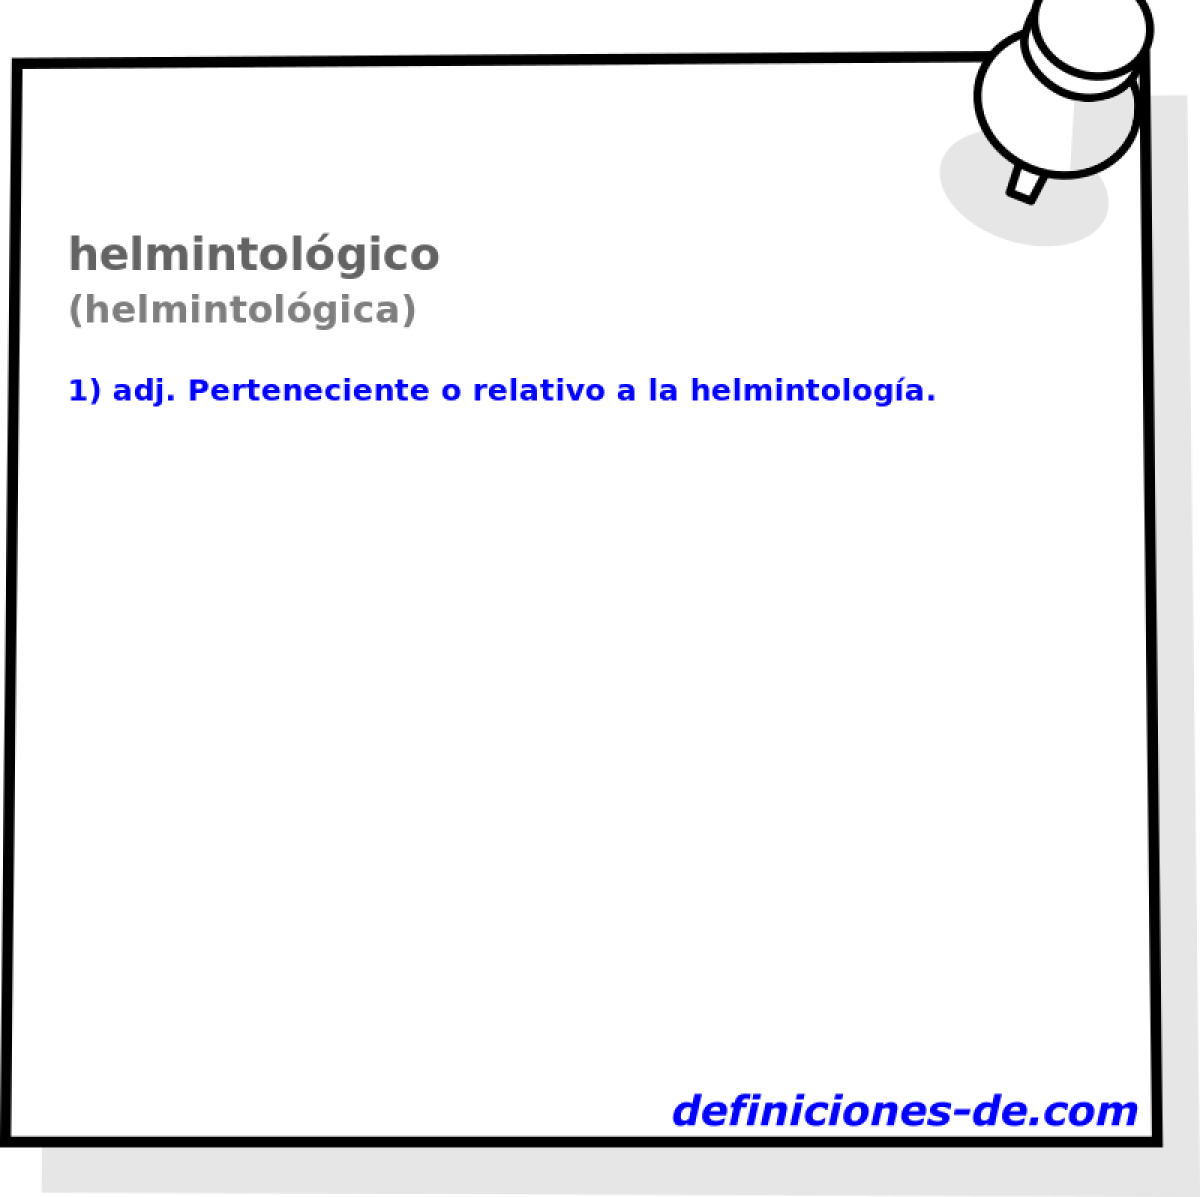 helmintolgico (helmintolgica)